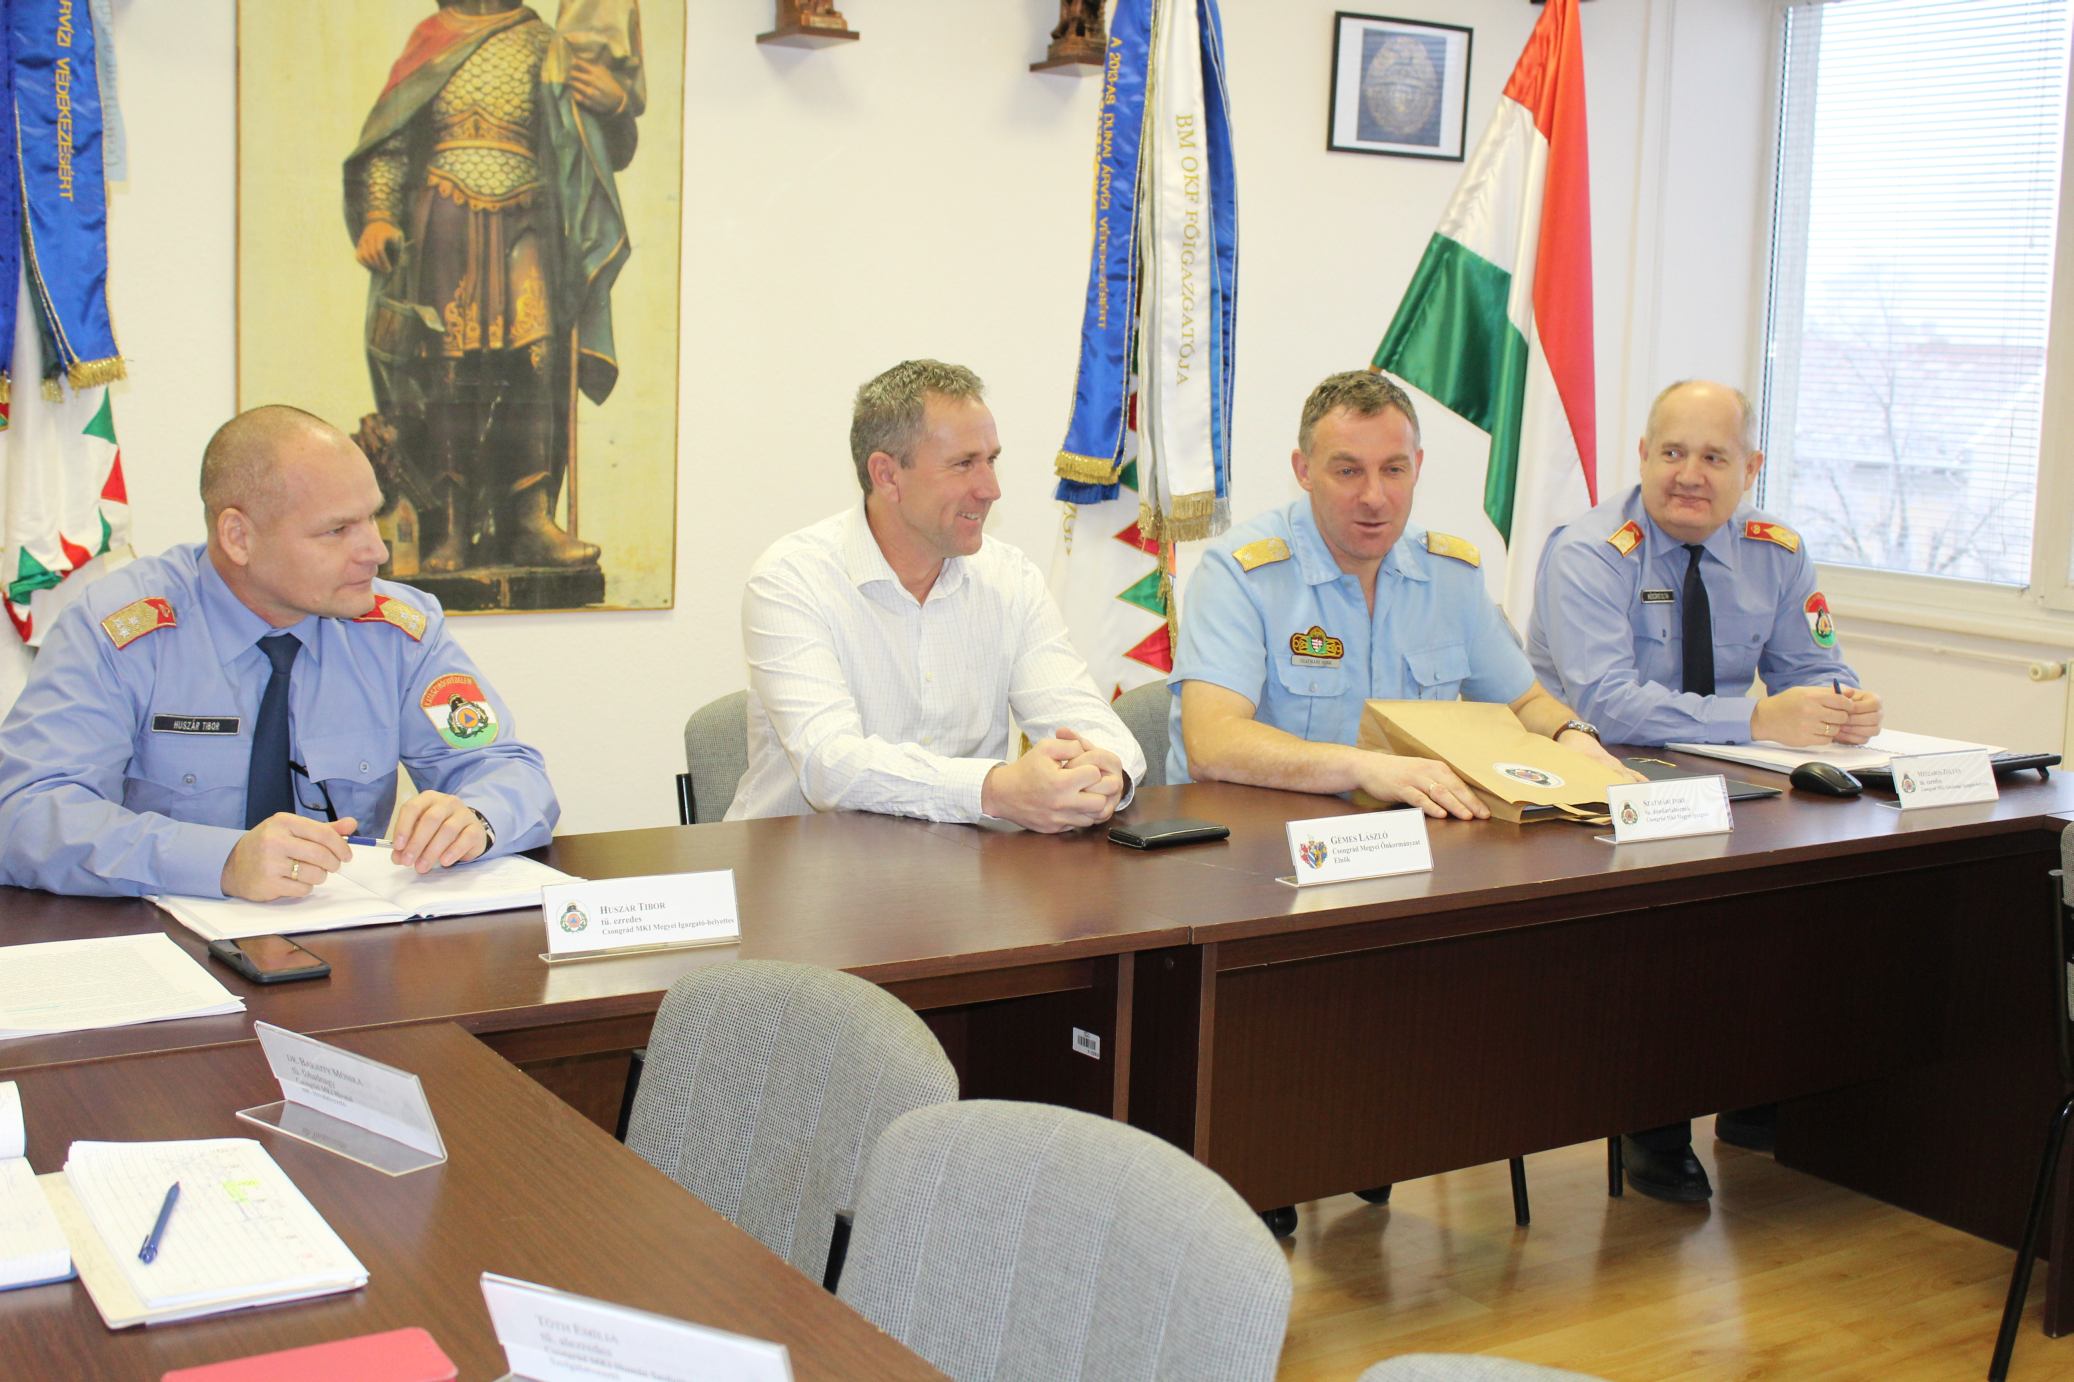 A megyében élők biztonsága az első - Csongrád megyei közgyűlés elnöke ellátogatott a katasztrófavédelemhez